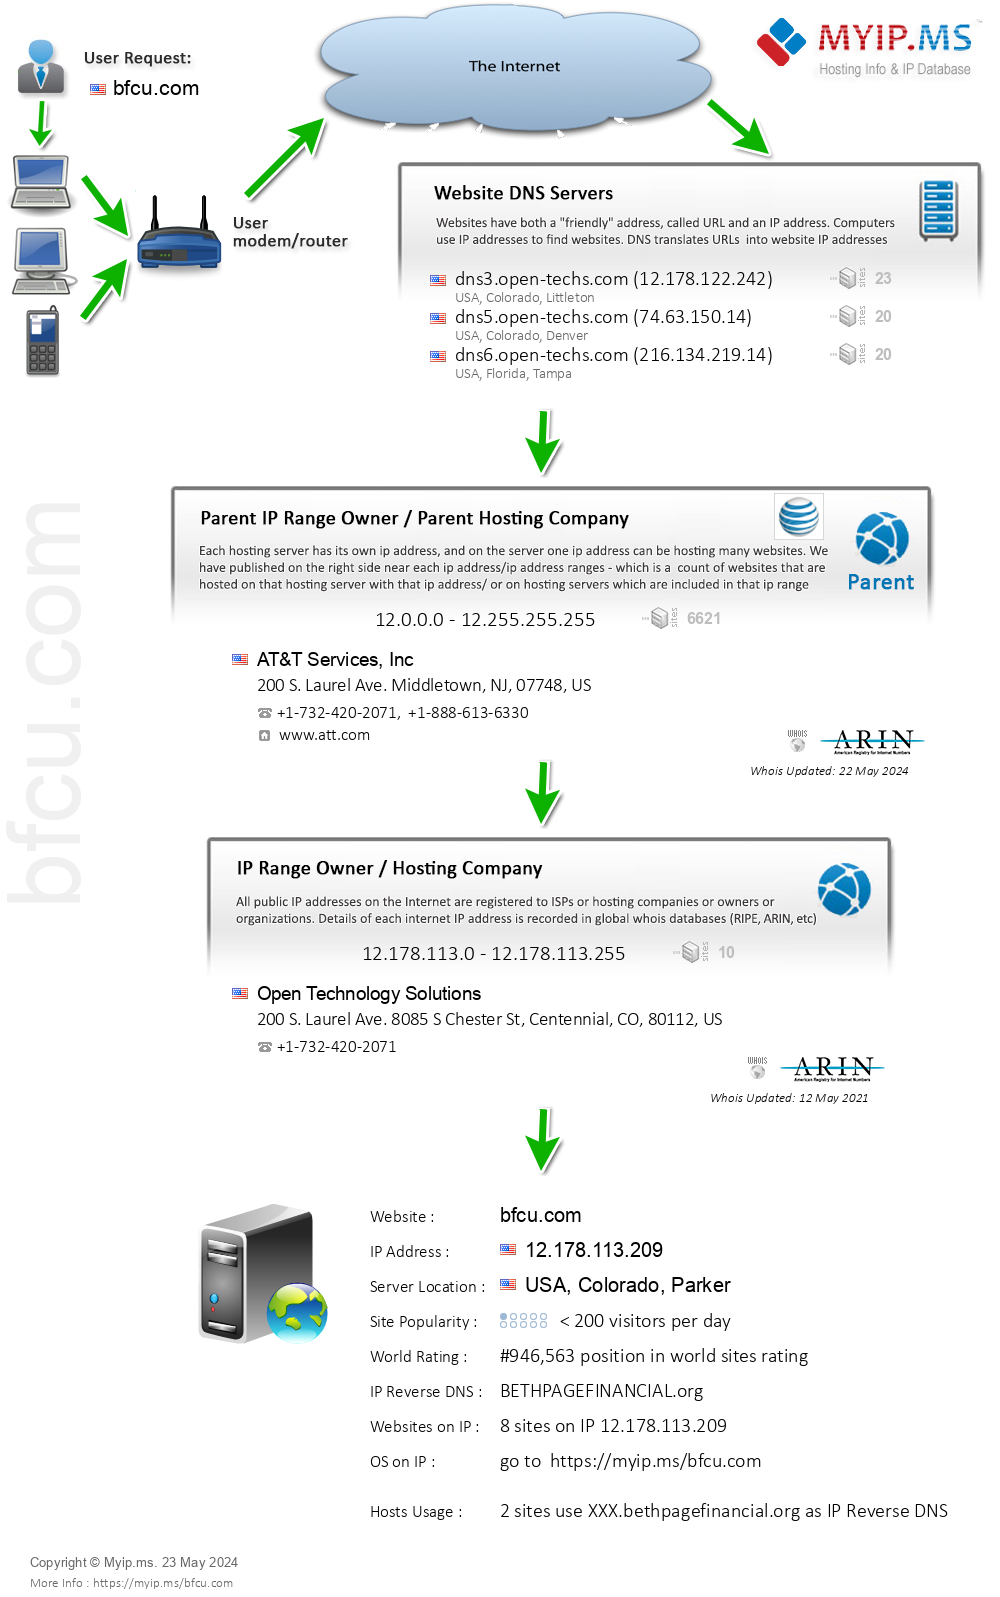 Bfcu.com - Website Hosting Visual IP Diagram